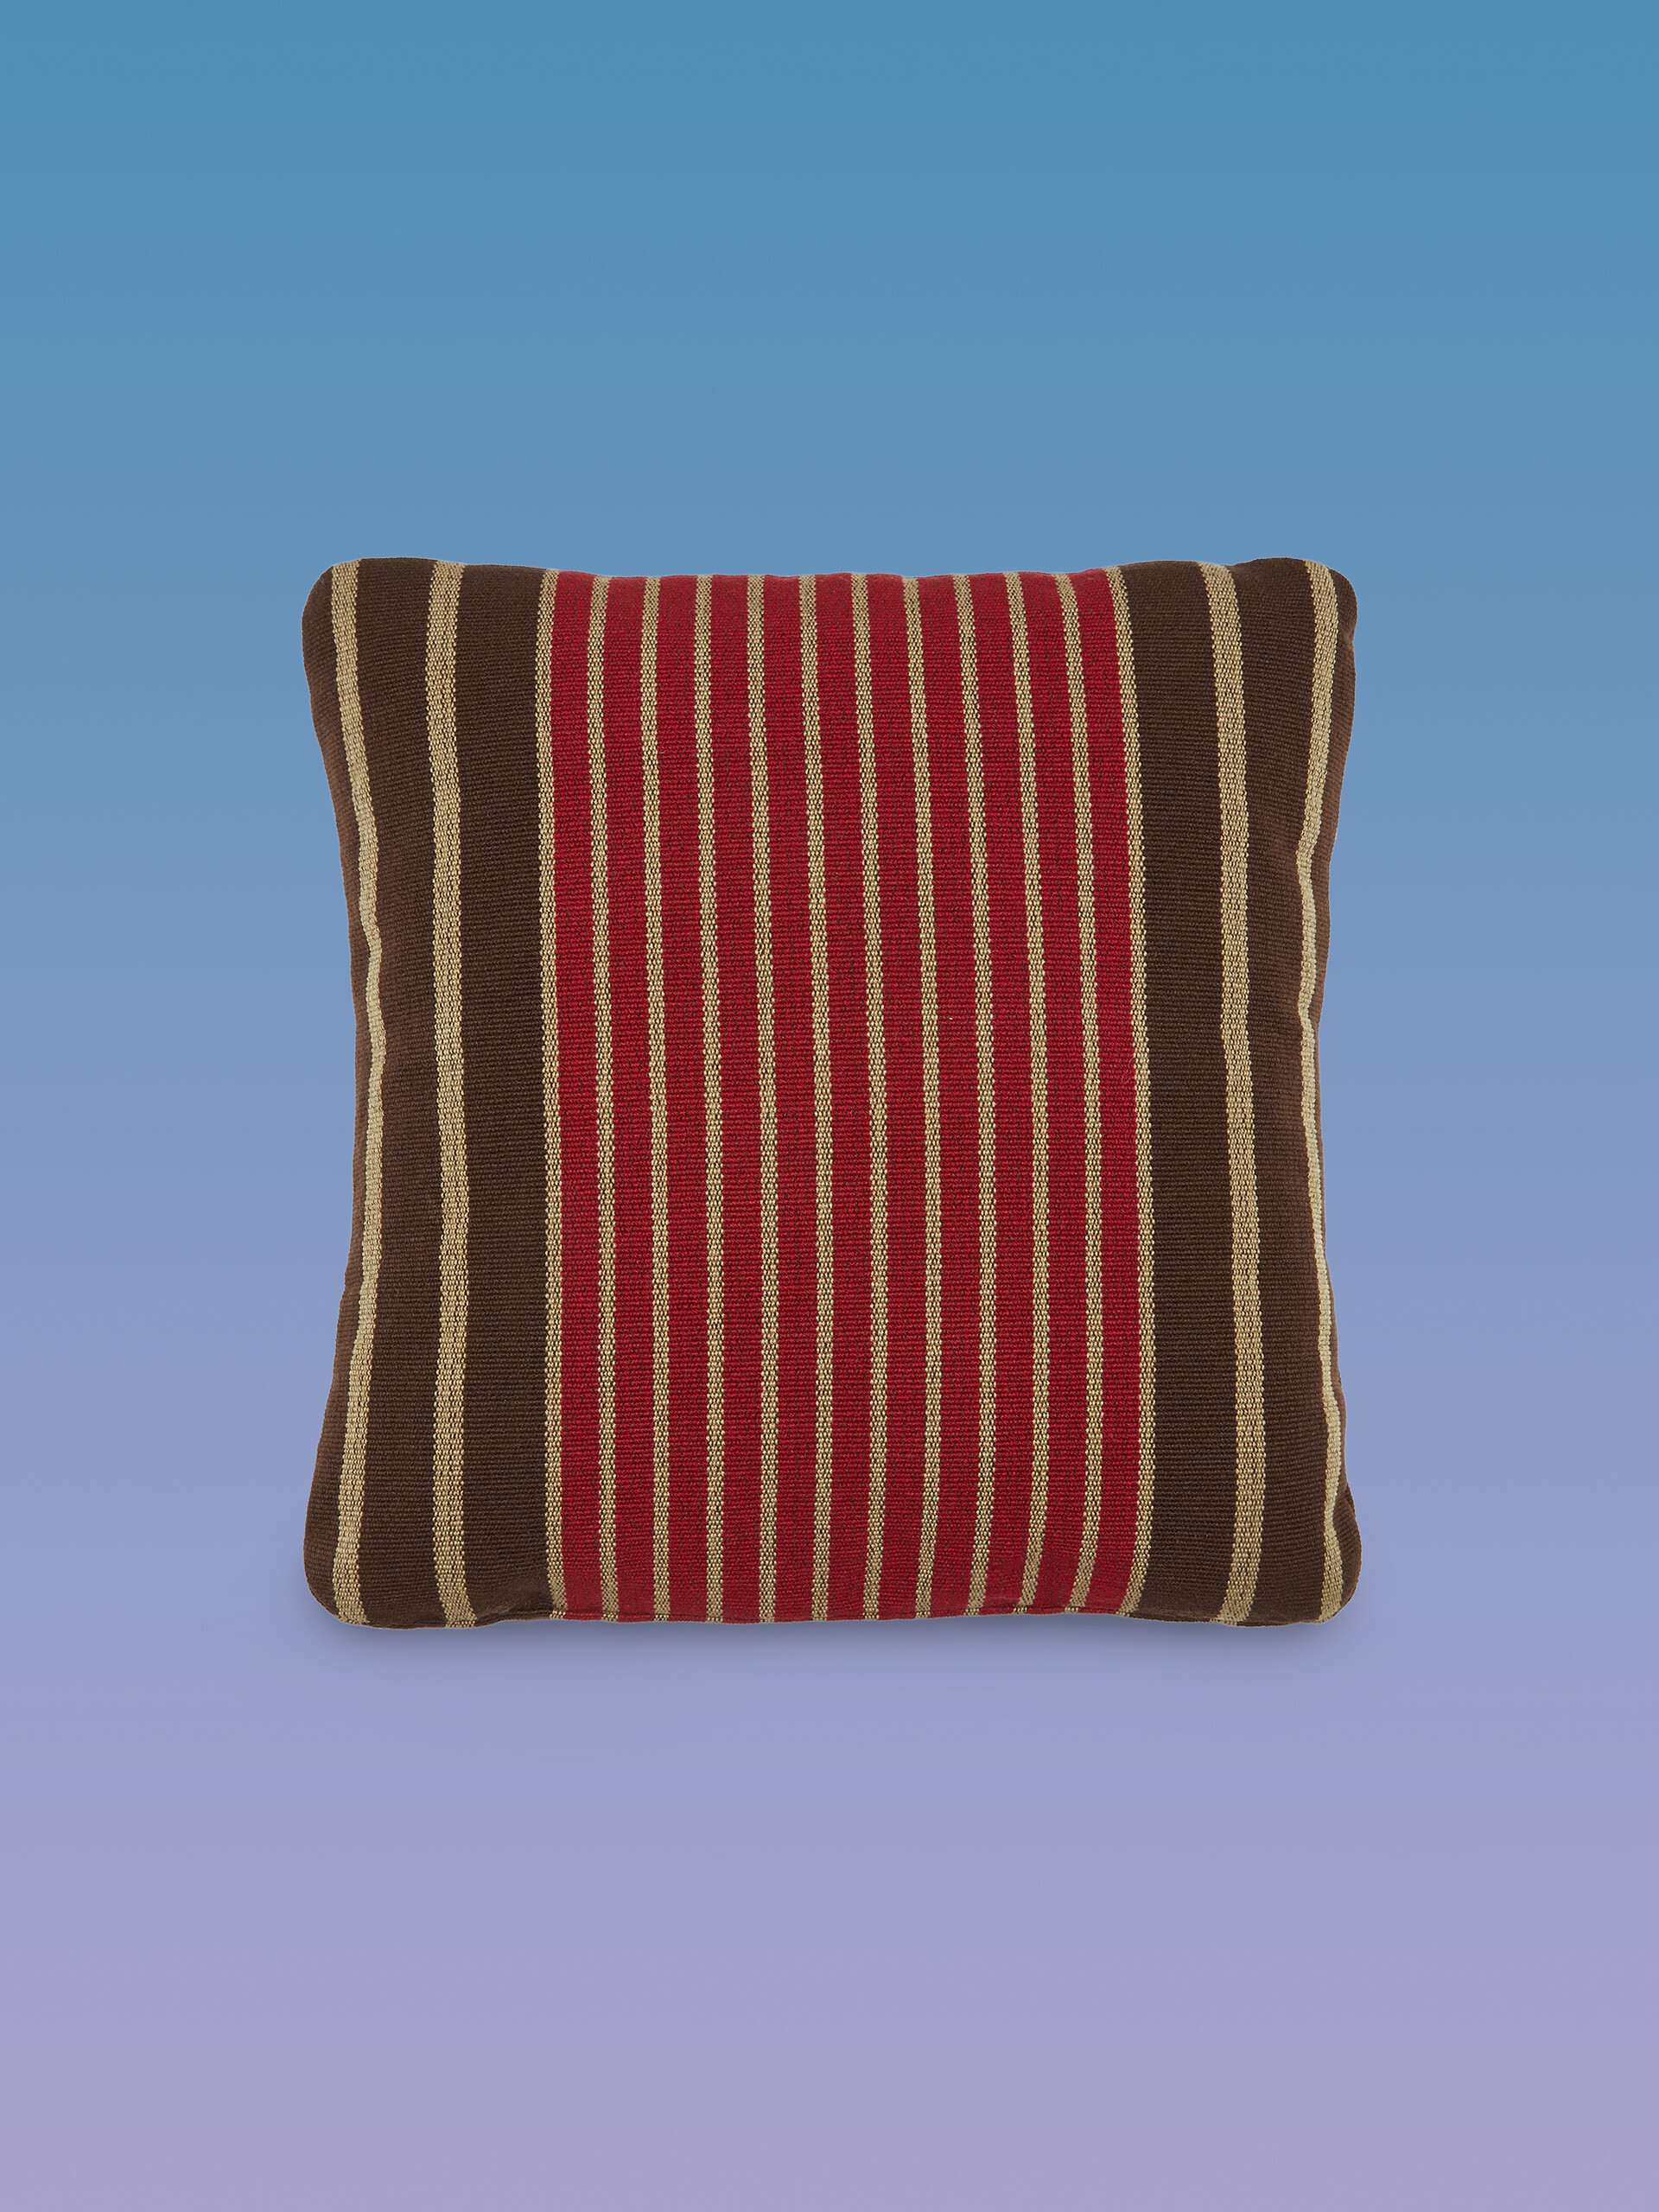 MARNI MARKET square cushion in multicolor brown fabric - Furniture - Image 1